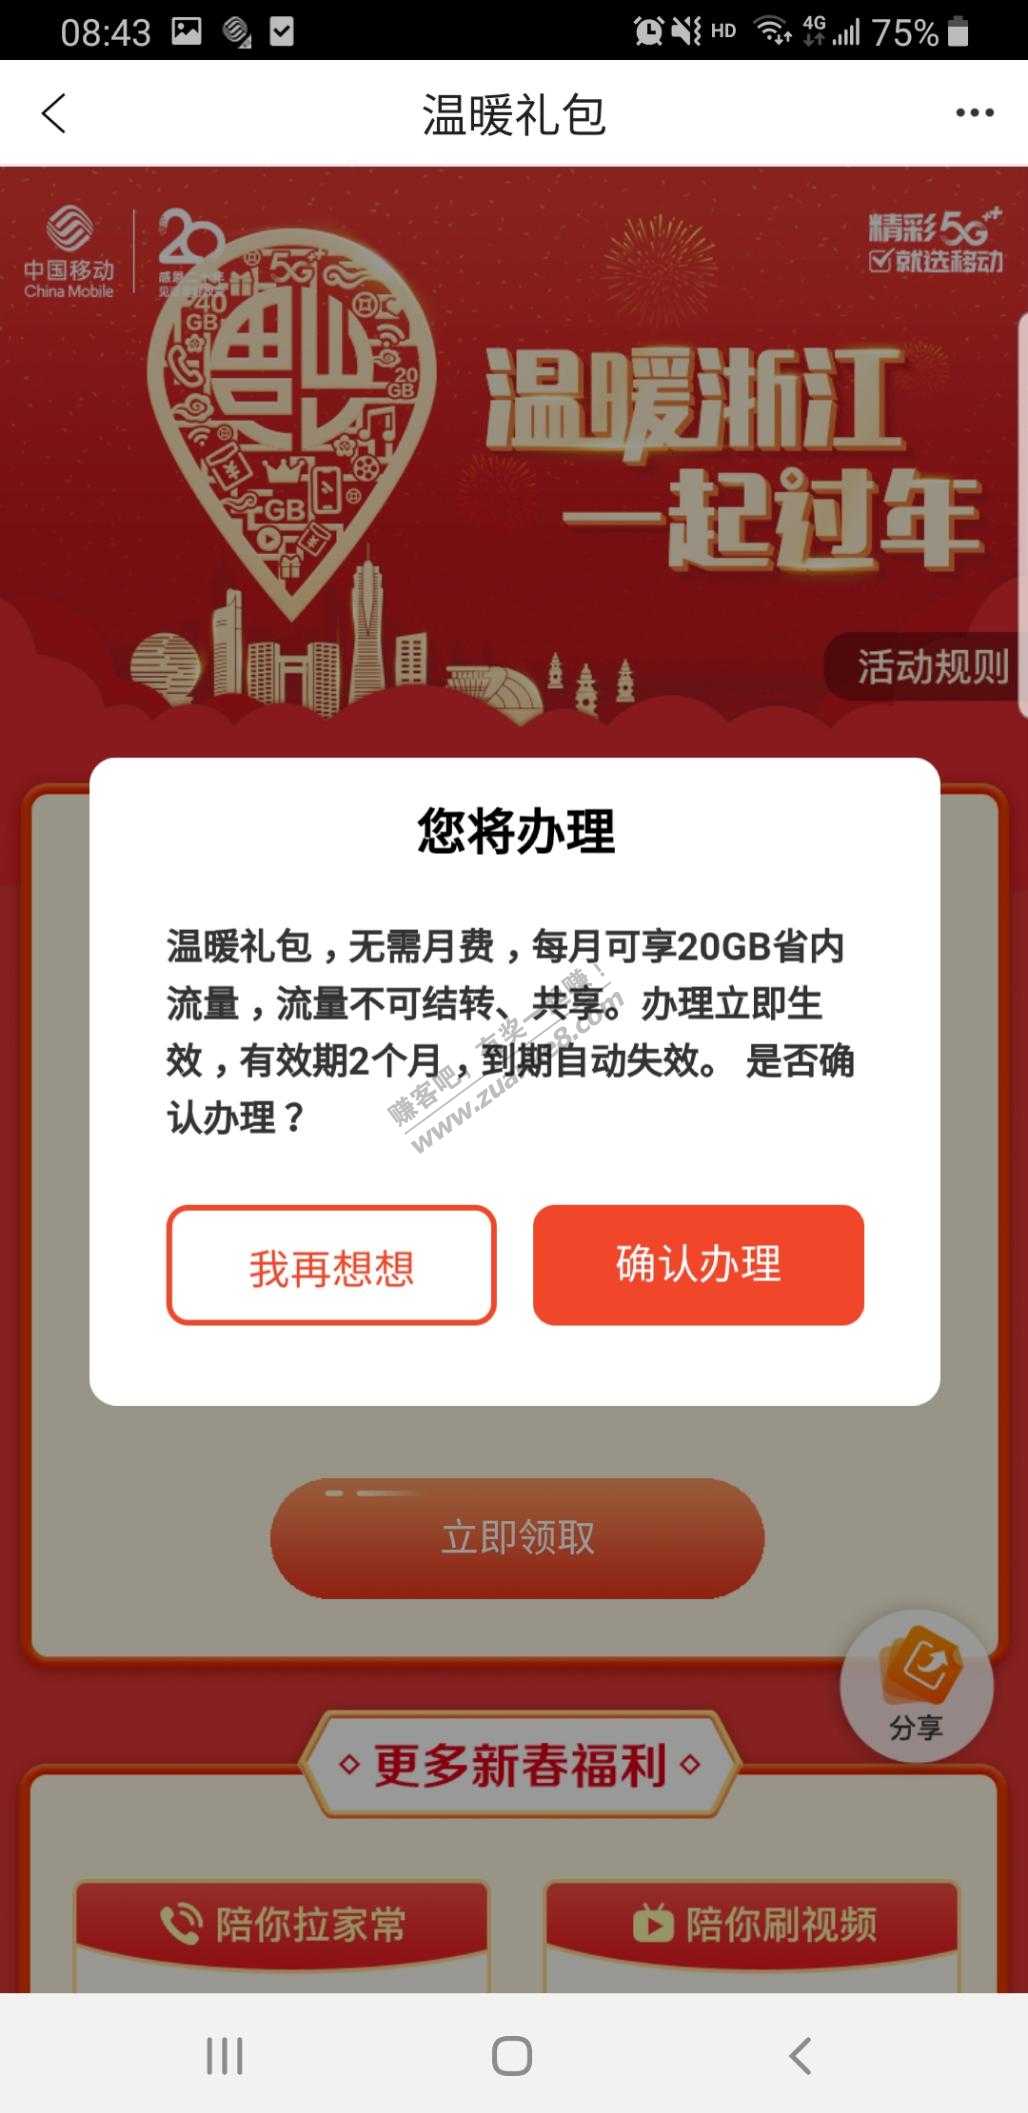 浙江移动手机营业厅领40gb流量-惠小助(52huixz.com)